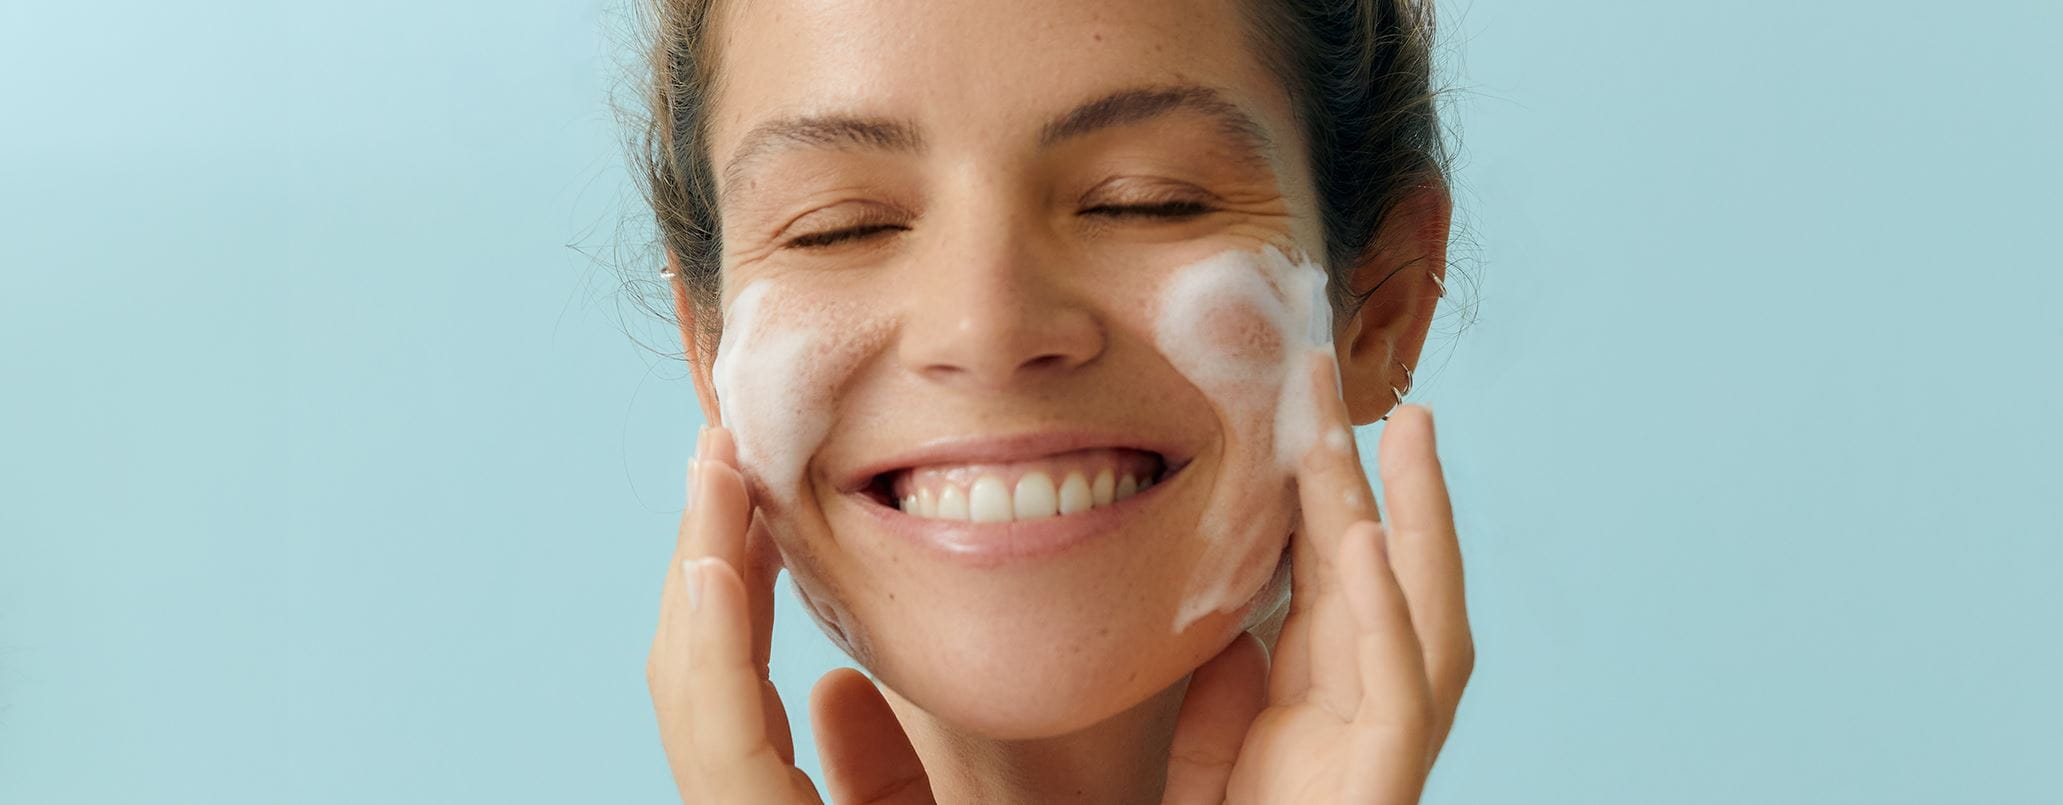 Limpieza facial casera o cómo conseguir una piel más bonita y sin impurezas  en casa